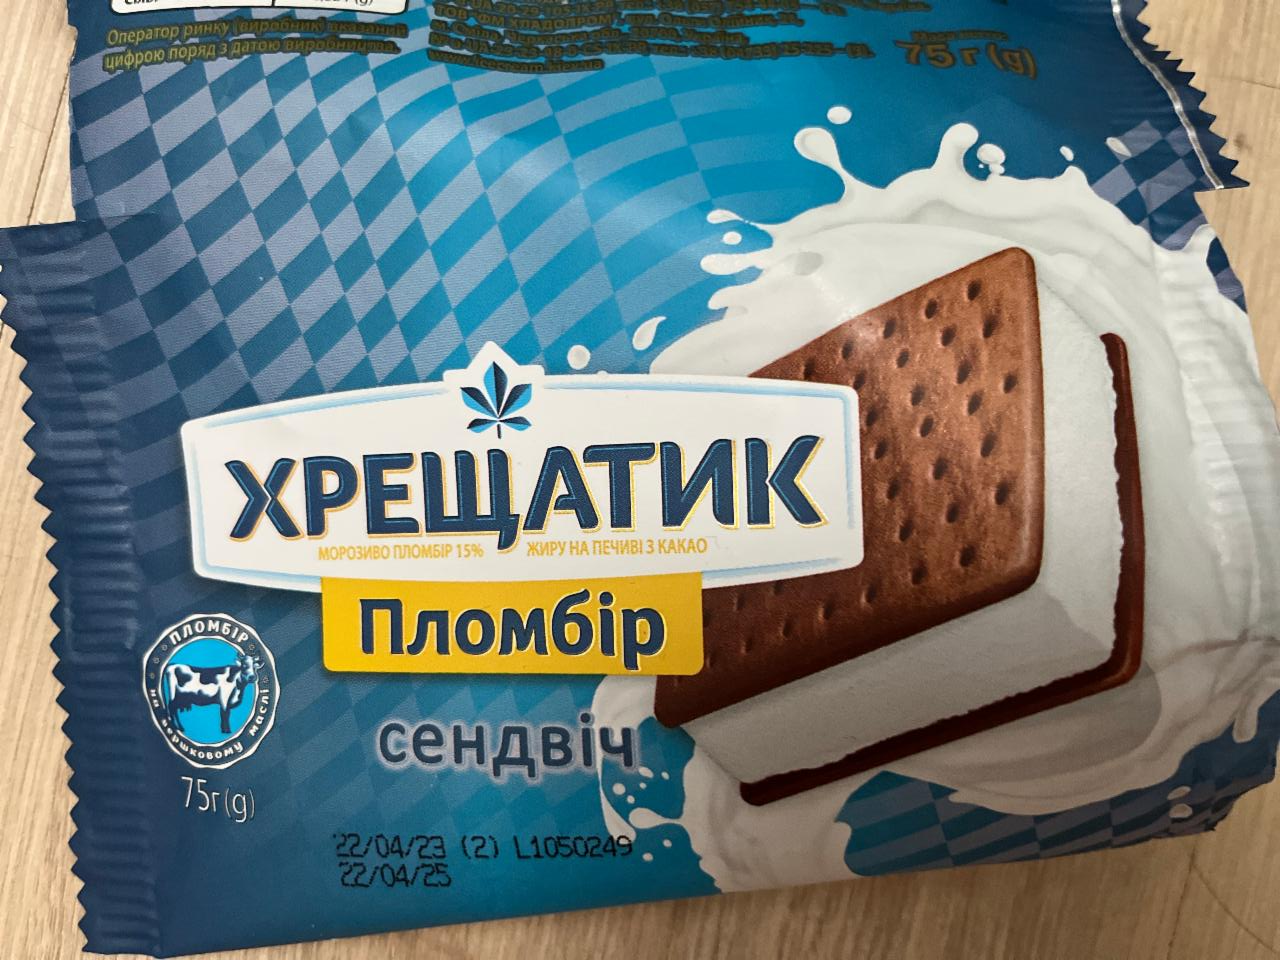 Фото - Морозиво пломбір 15% на печиві з какао Хрещатик